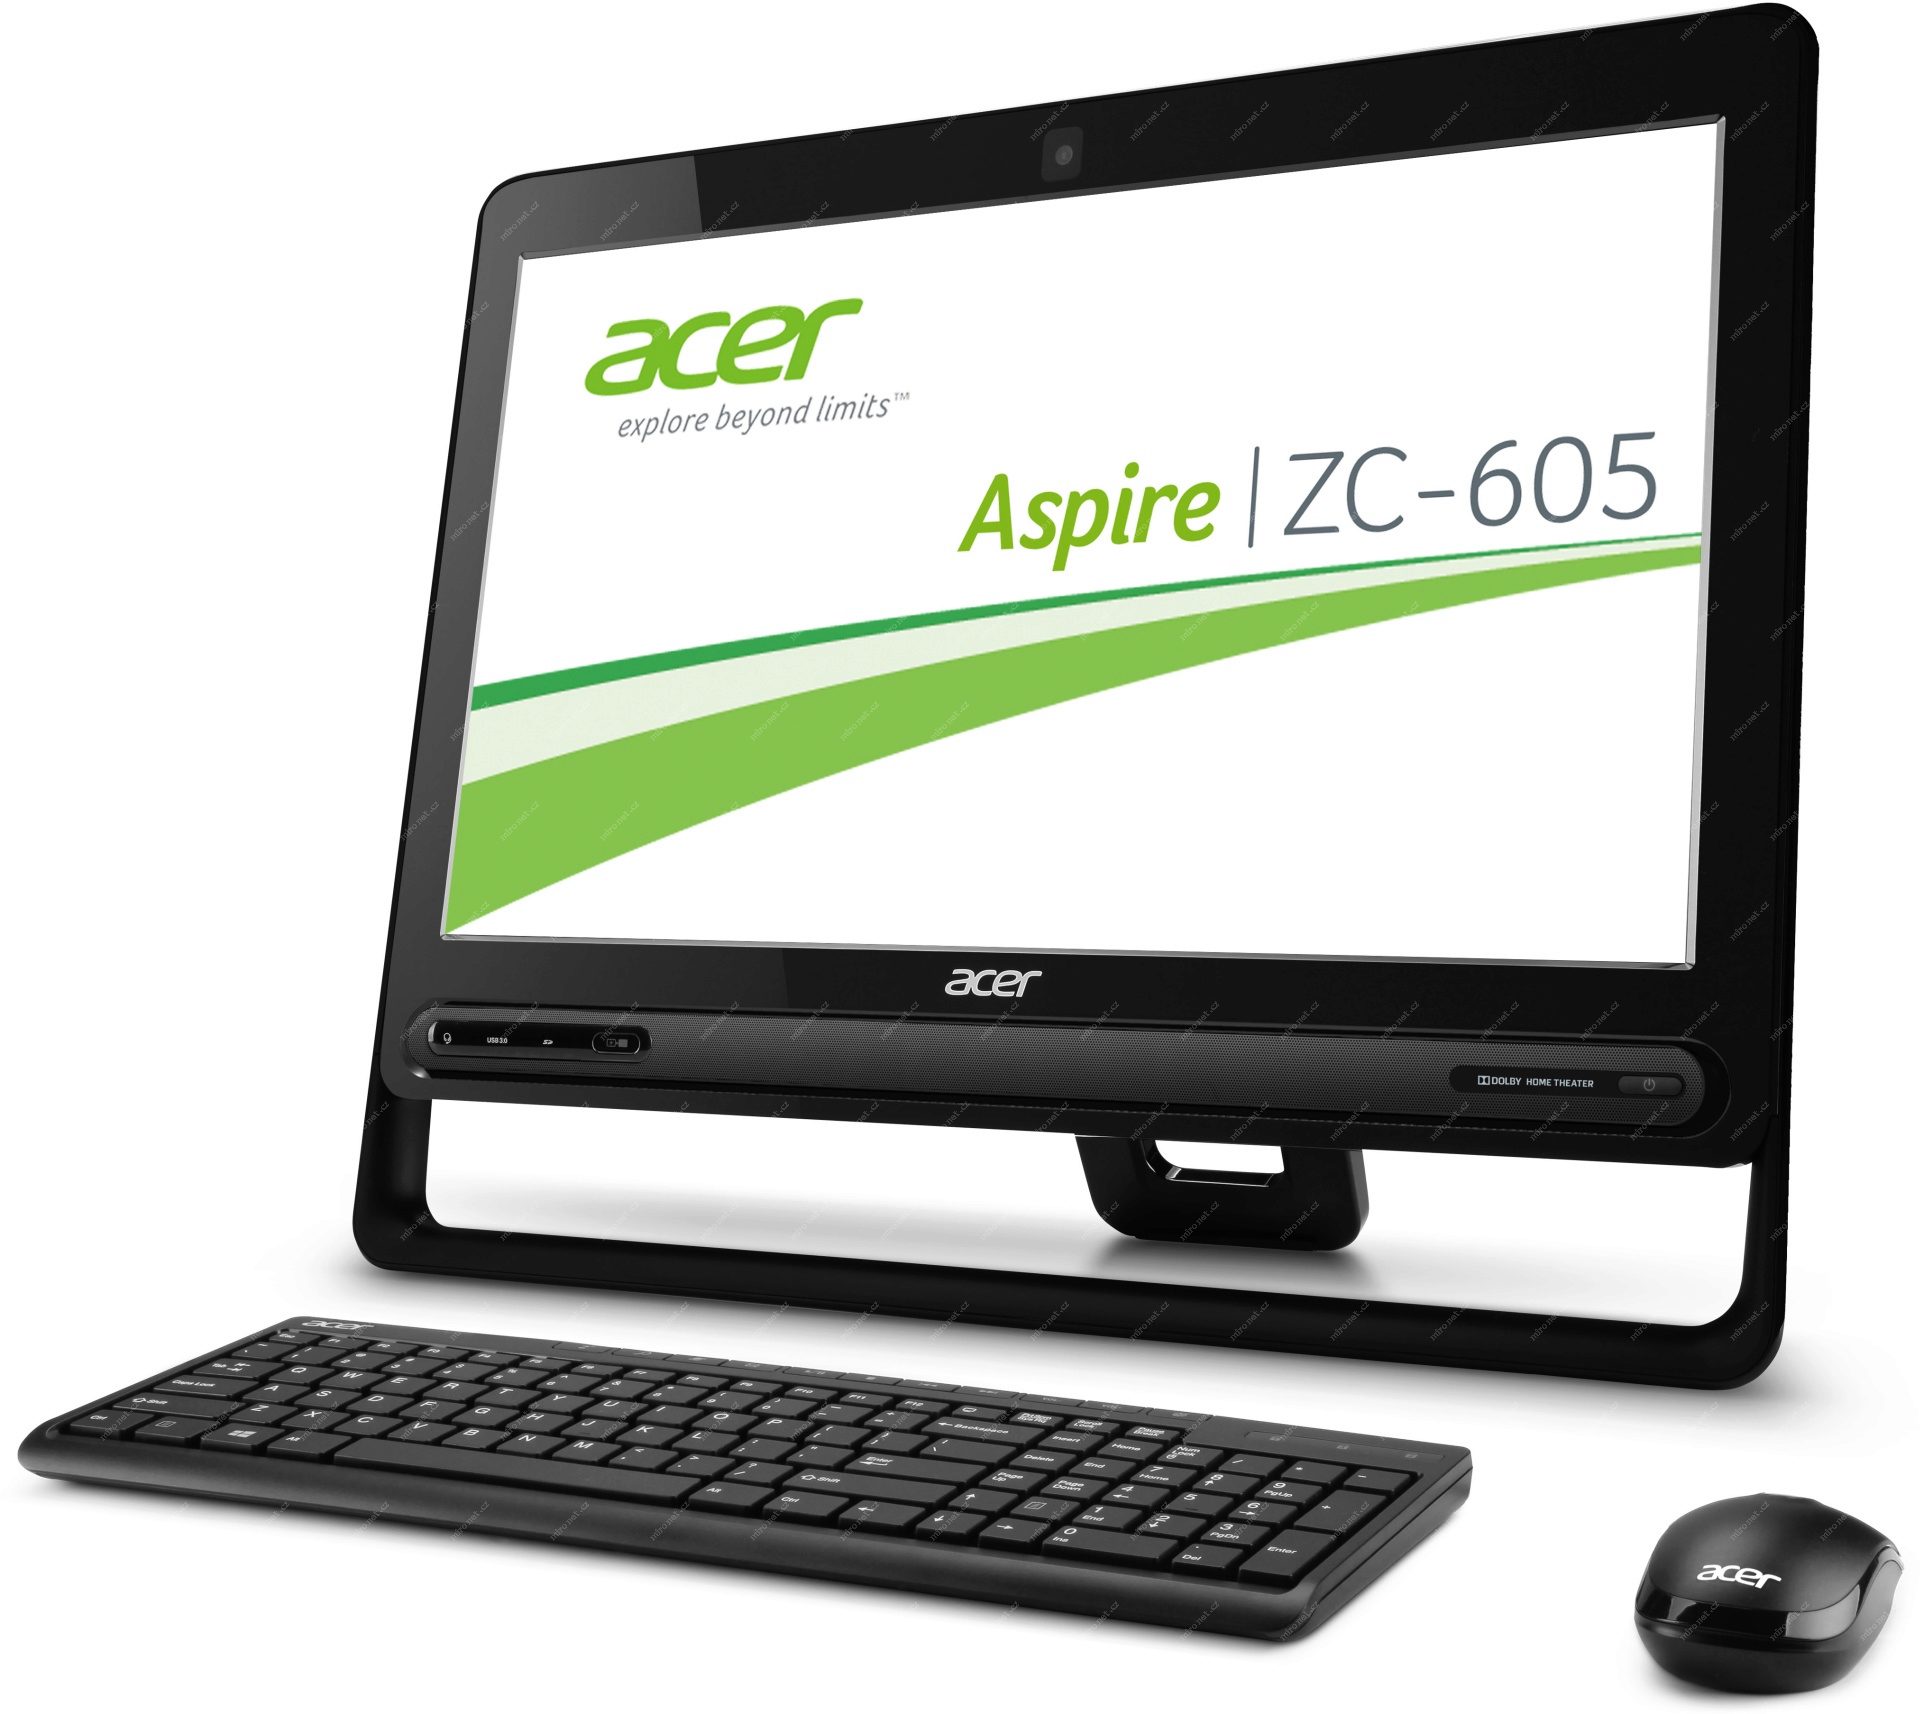 Моноблоки acer москва. Acer моноблок Aspire ZC 605. Моноблок Acer Aspire ZC-610. Моноблок 19.5" Acer Aspire ZC-605. Моноблок Aspire ZC 610.